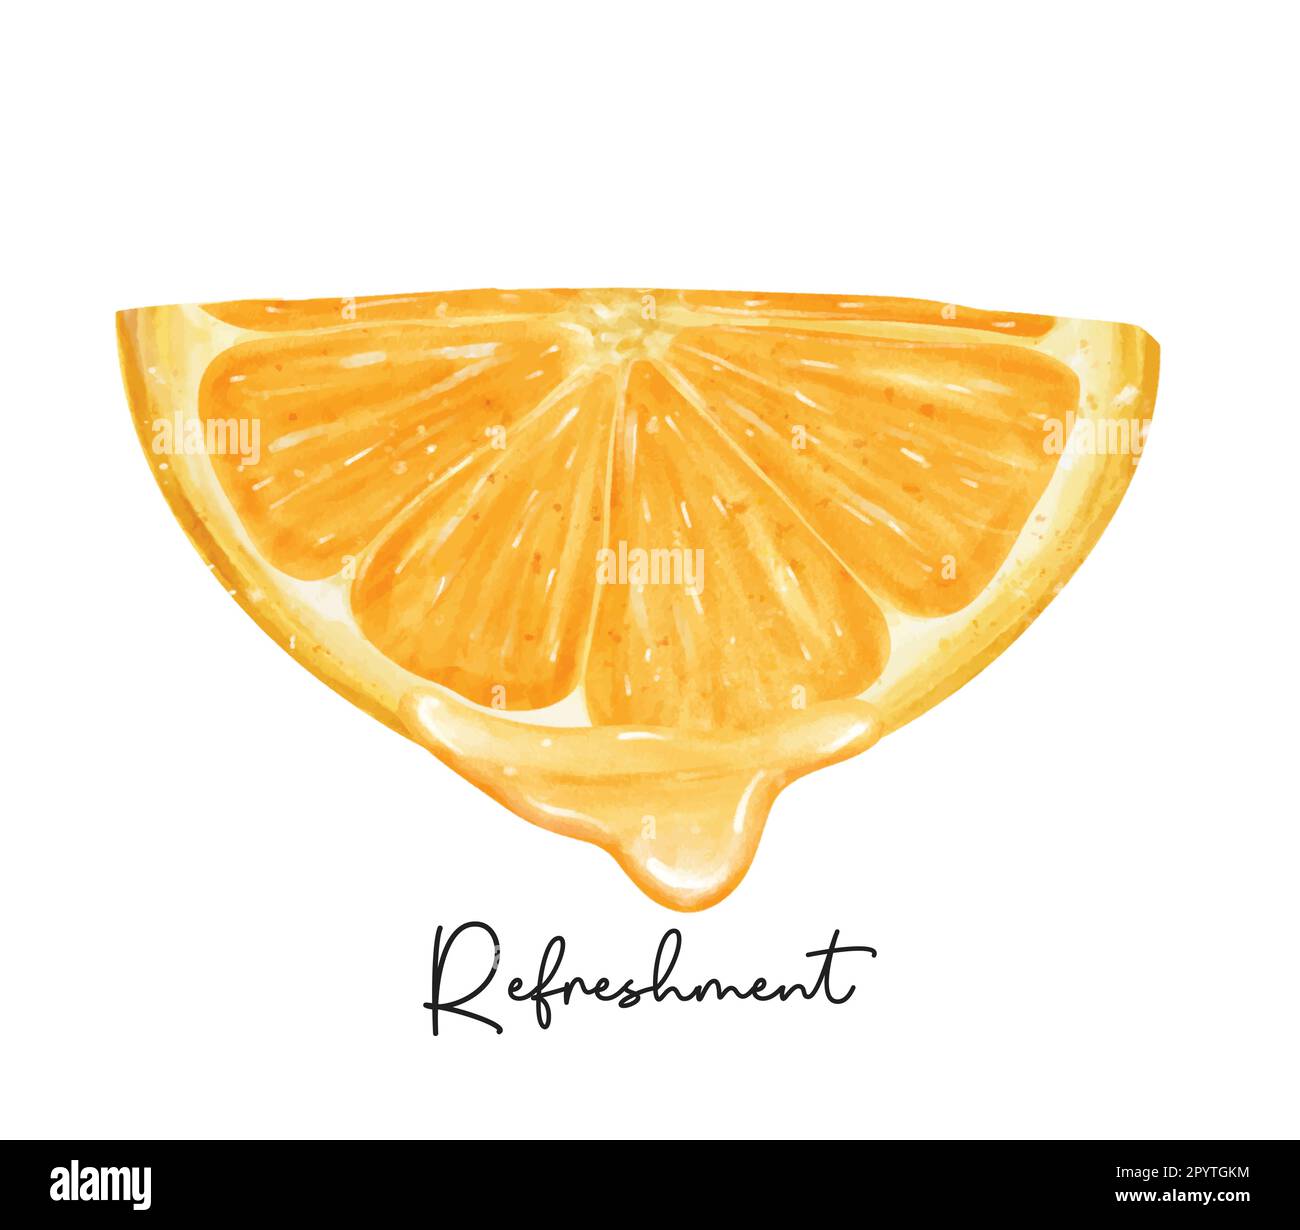 Rinfresco mezzo pezzo di frutta arancione tagliata con acquerello liquido pittura a mano semi-realistica illustrazione vettore isolato su bianco backgroun Illustrazione Vettoriale